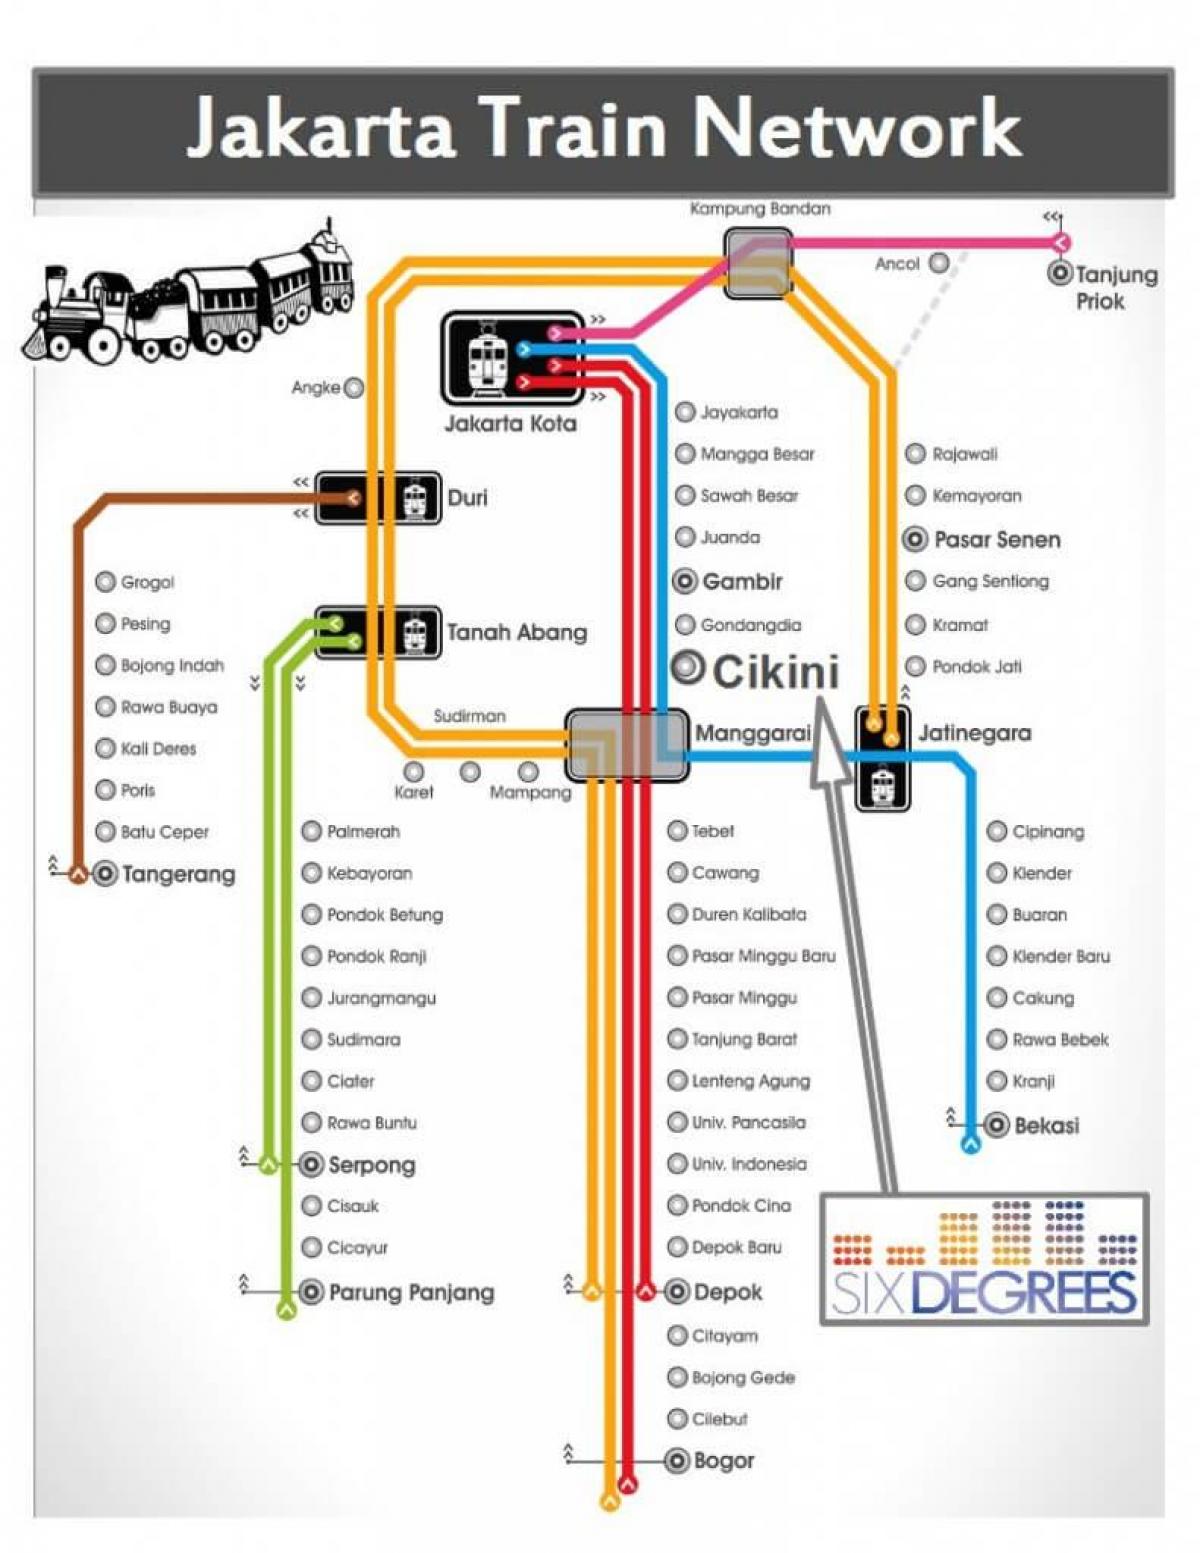 Jakarta tren istasyonu haritası 